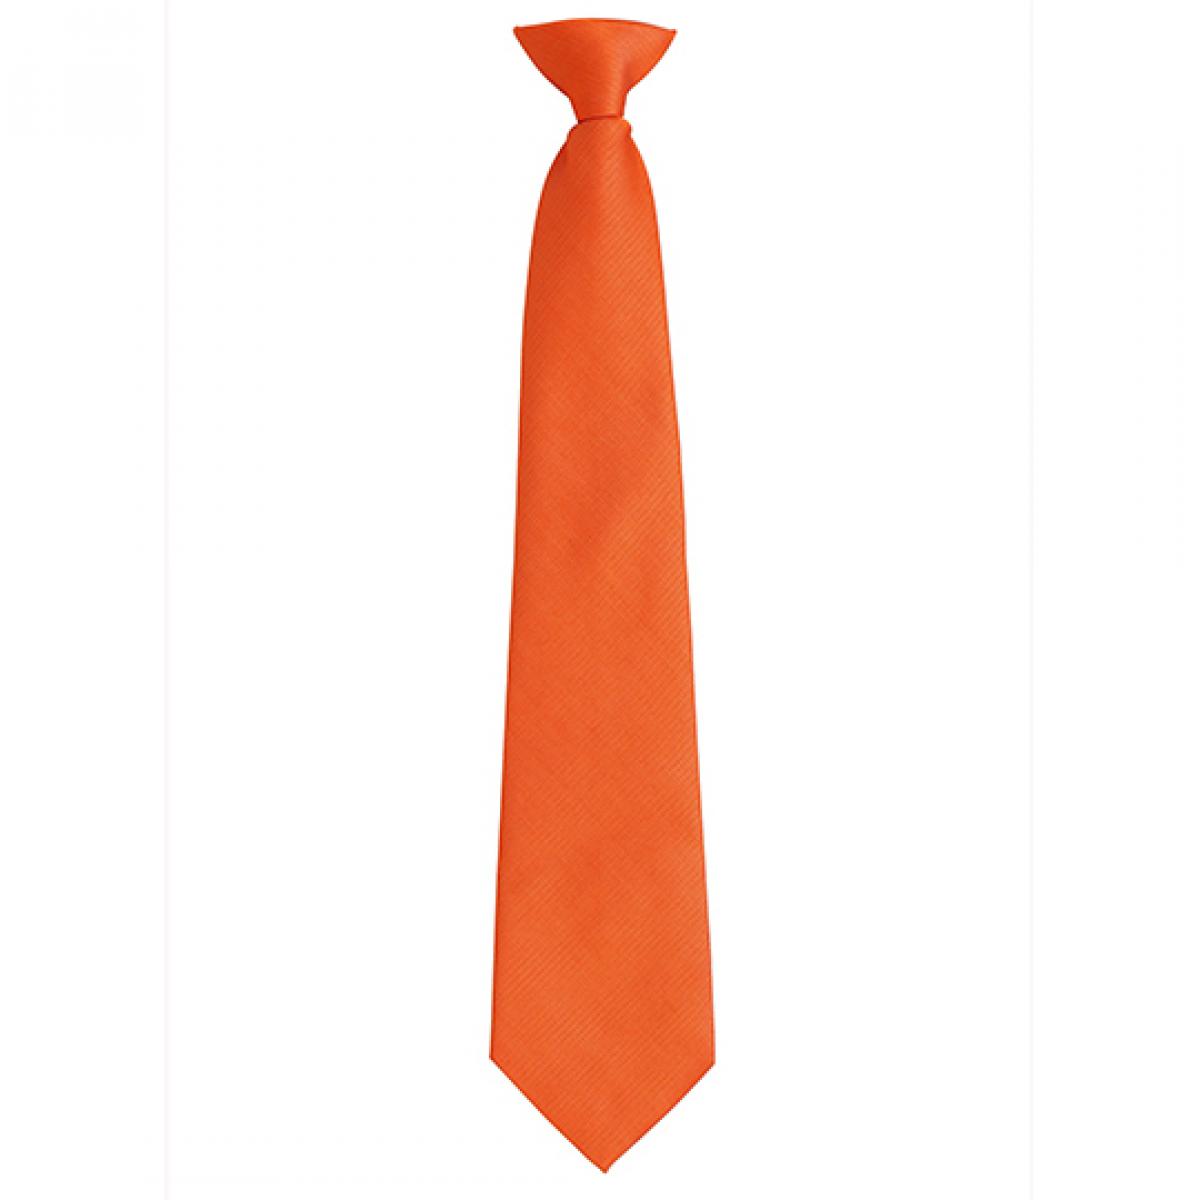 Hersteller: Premier Workwear Herstellernummer: PR785 Artikelbezeichnung: ´Colours´ Fashion Clip Tie Farbe: Orange (ca. Pantone 1495C)